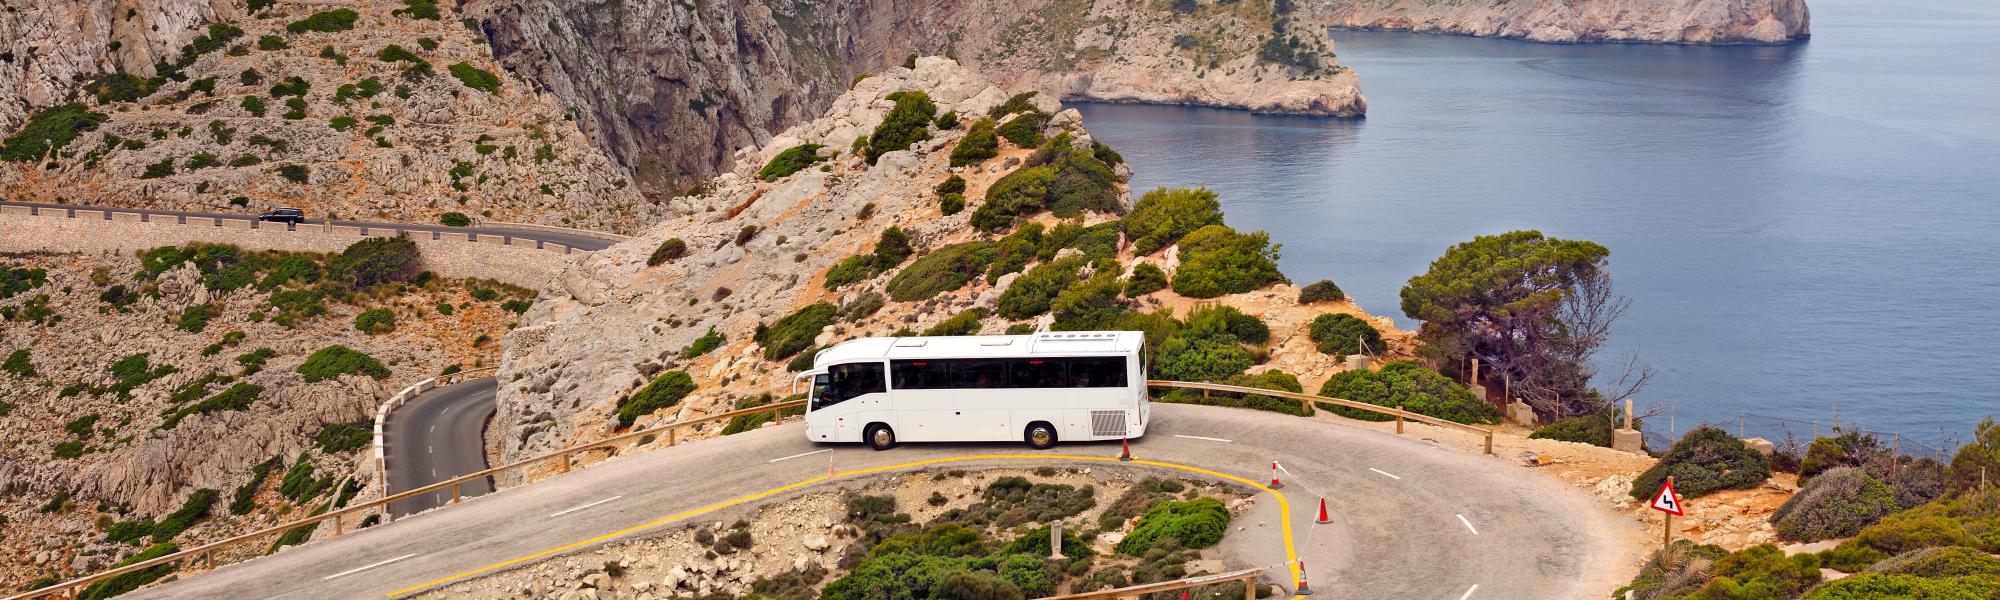 tourist coach on a mountain road